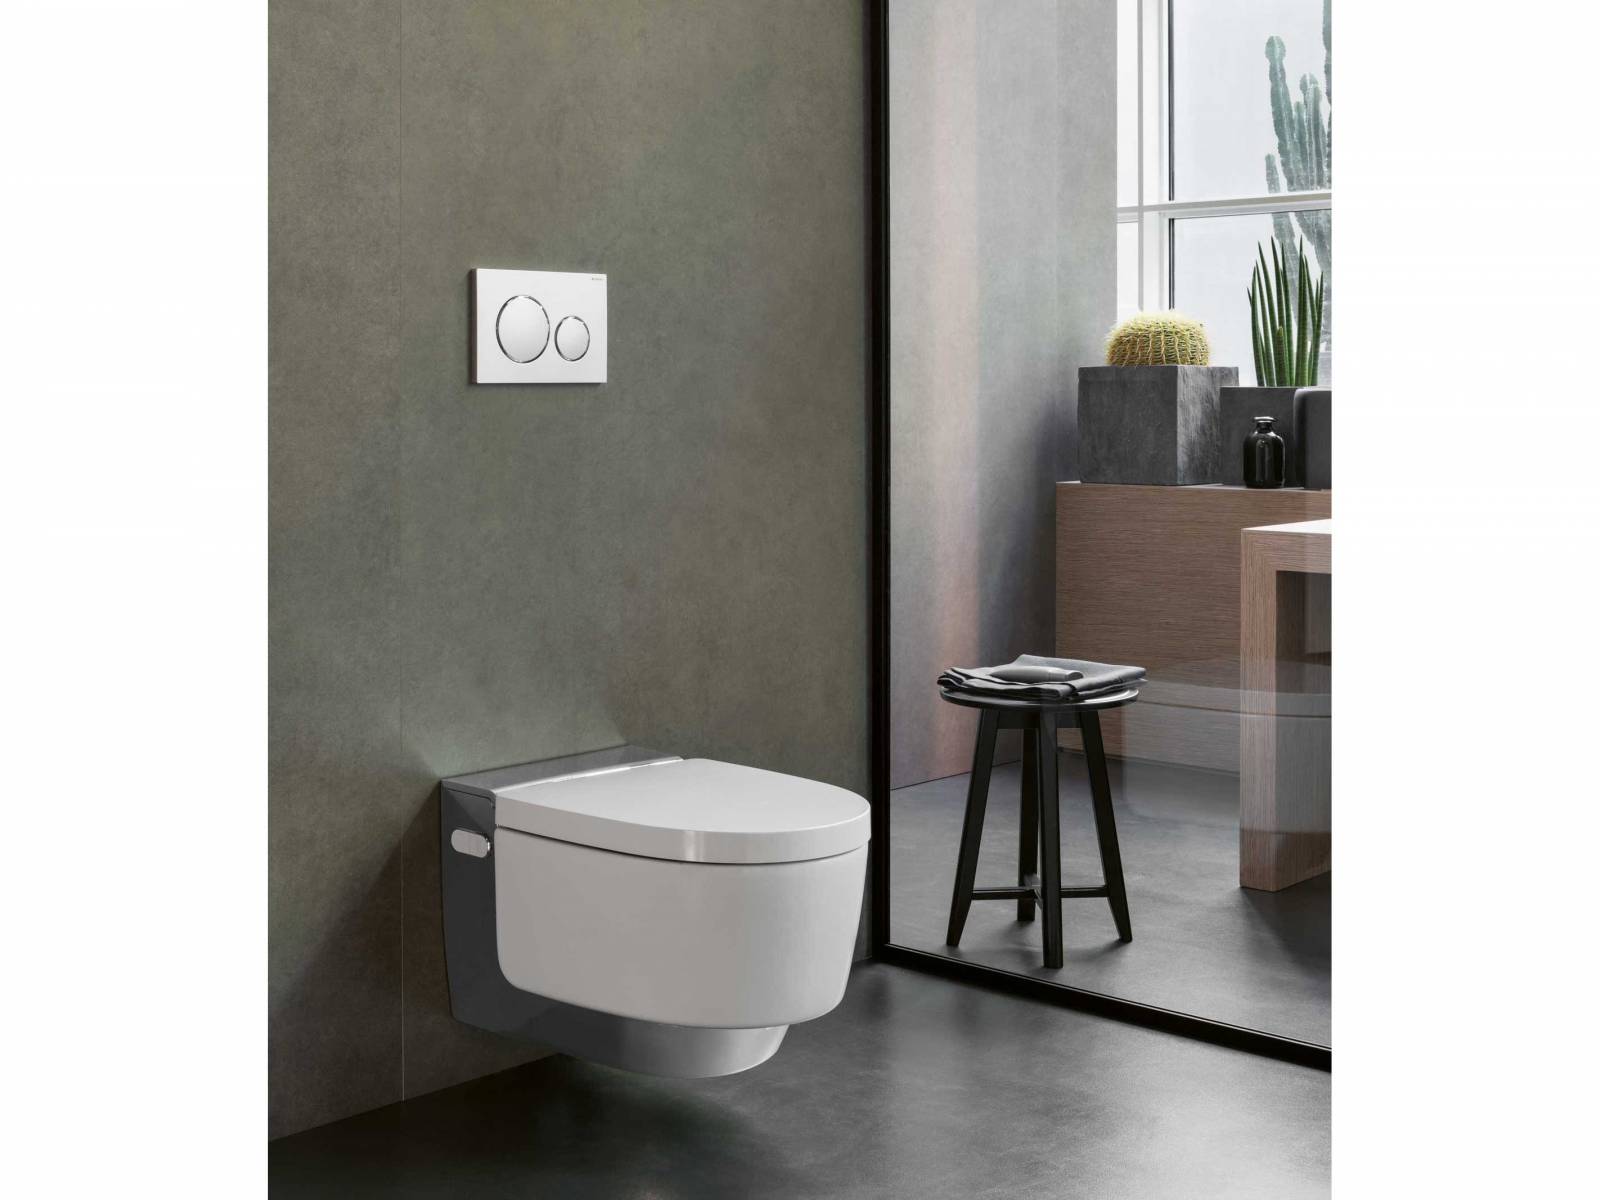 Der Schweizer Hersteller hat für jede Raumsituation das optimale Dusch-WC entwickelt. Das schwebende «Aquaclean Mera» ist nicht nur elegant, sondern bietet auch allerlei Extras wie Geruchsabsaugung, Orientierungslicht und Warmluftfön. Geberit.